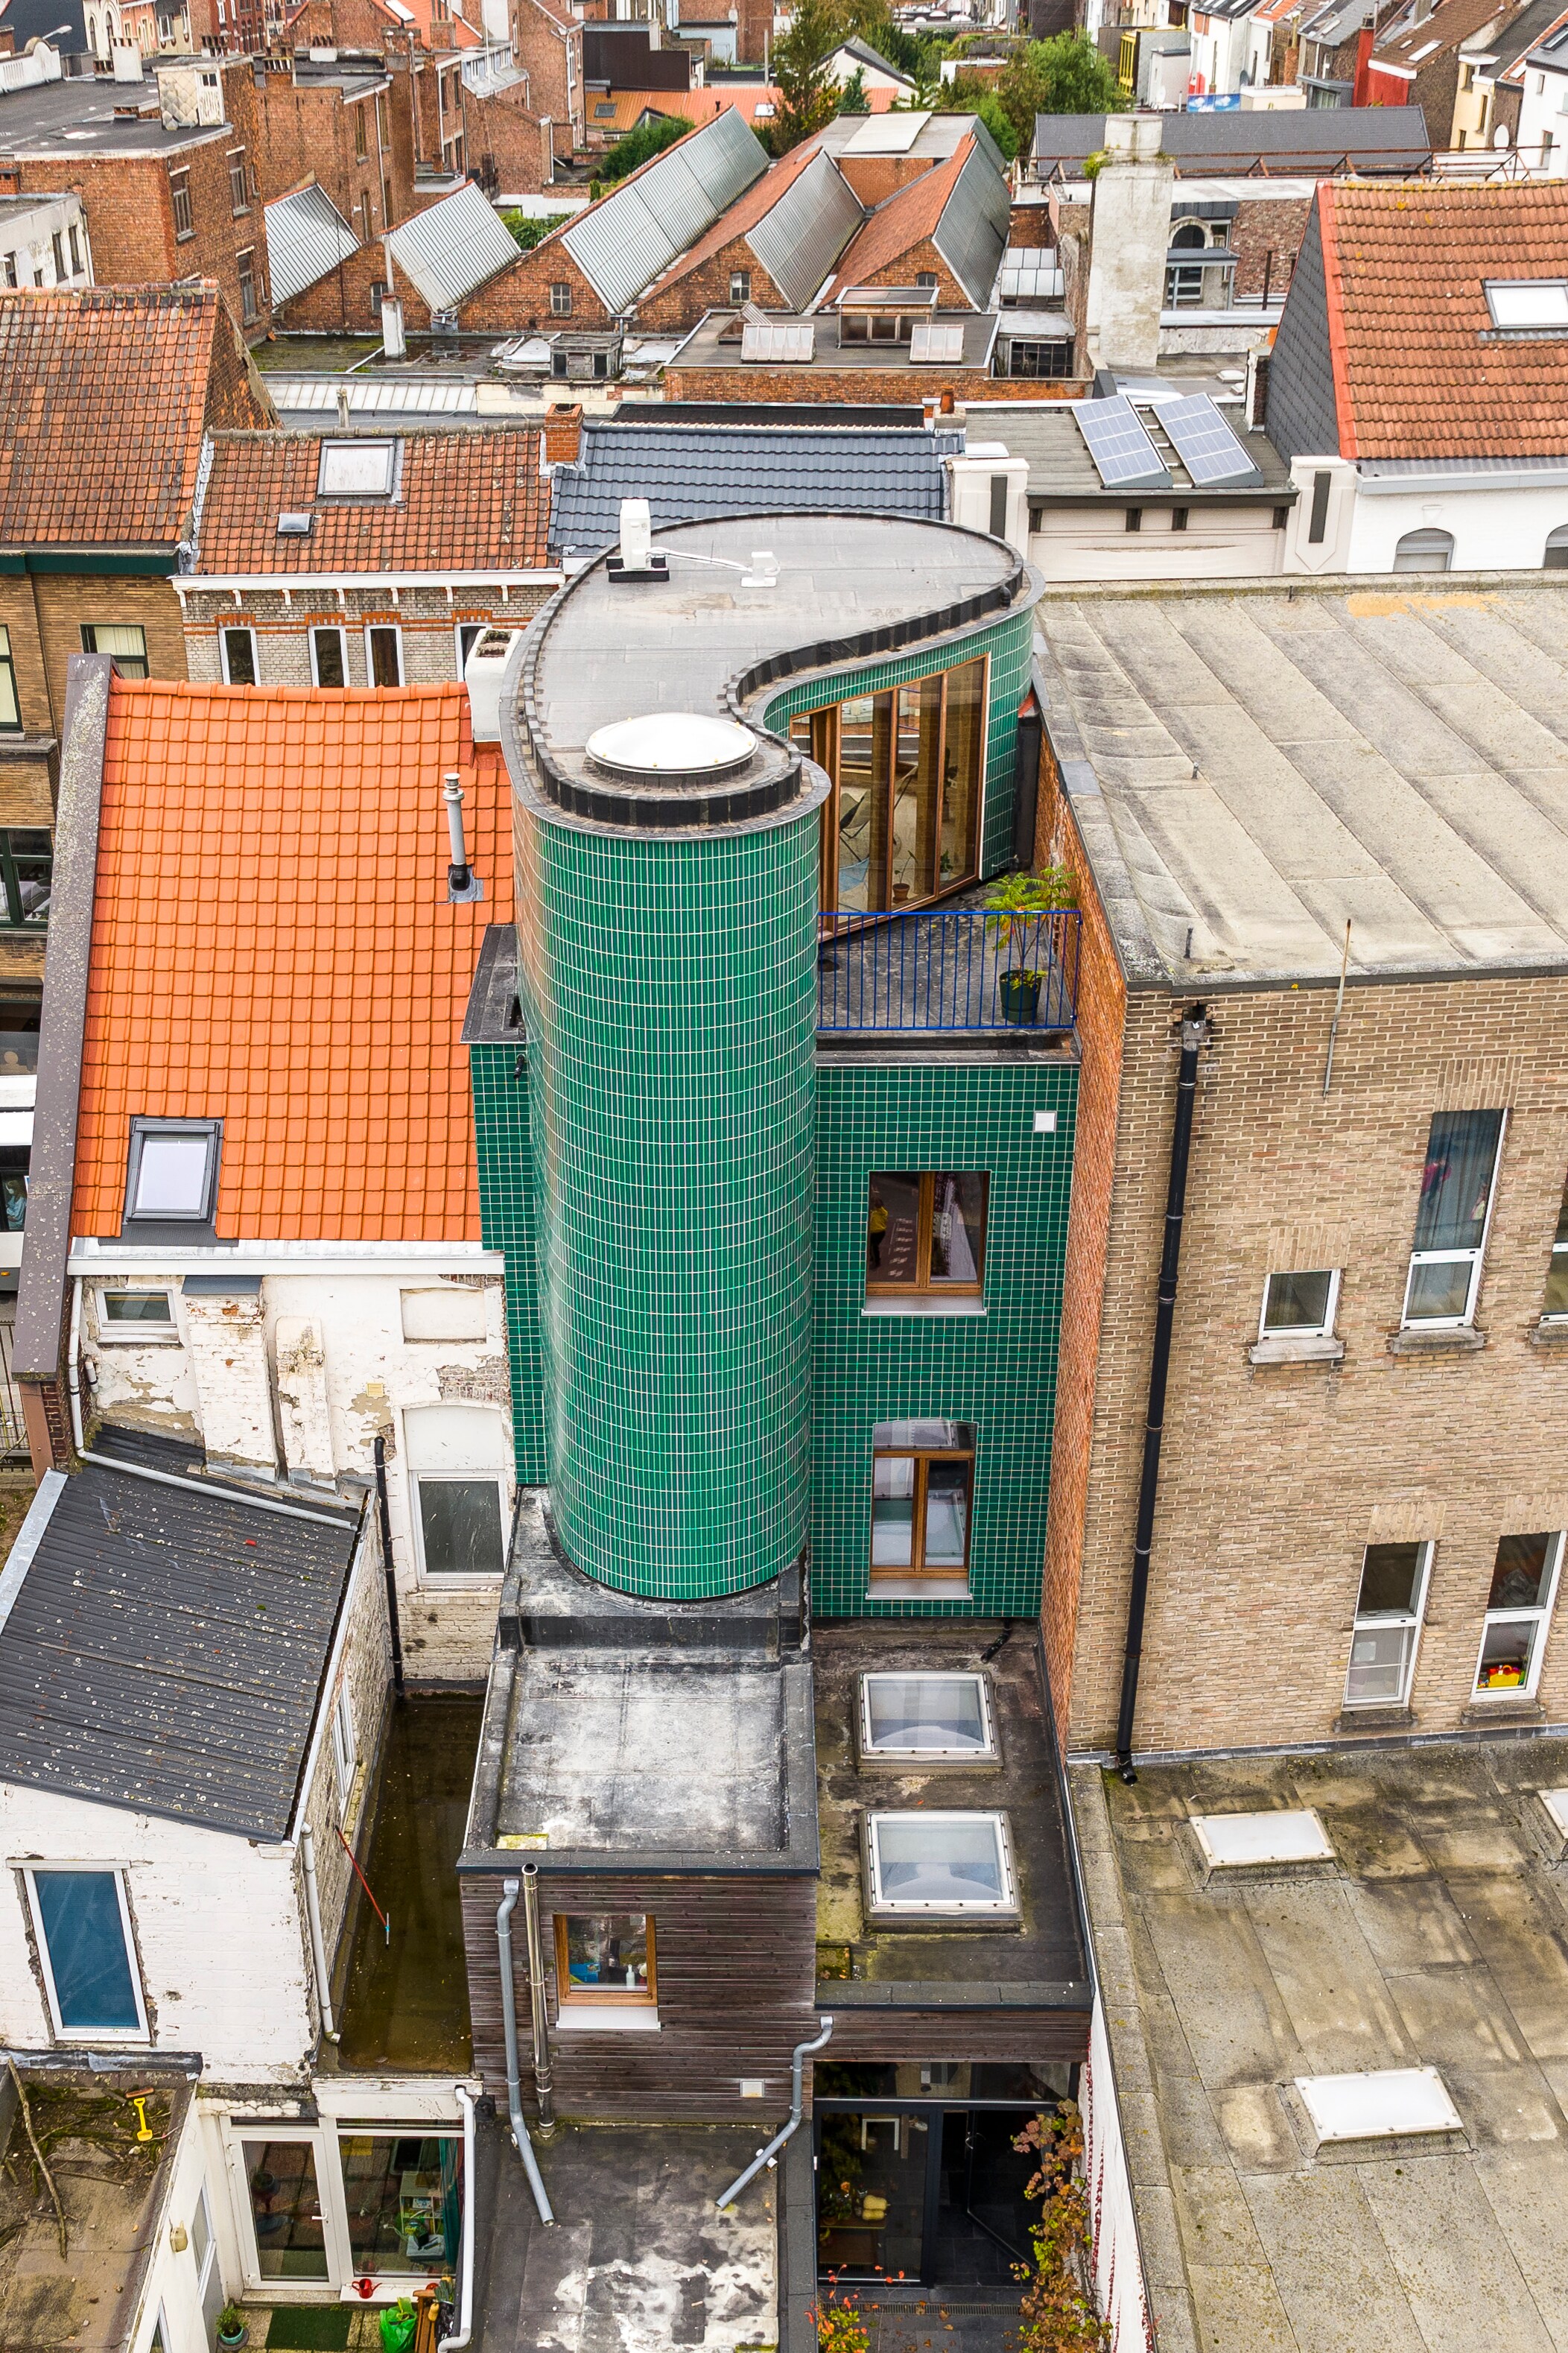 Binnenkijken in een uniek Gents rijhuis ‘met een torentje’